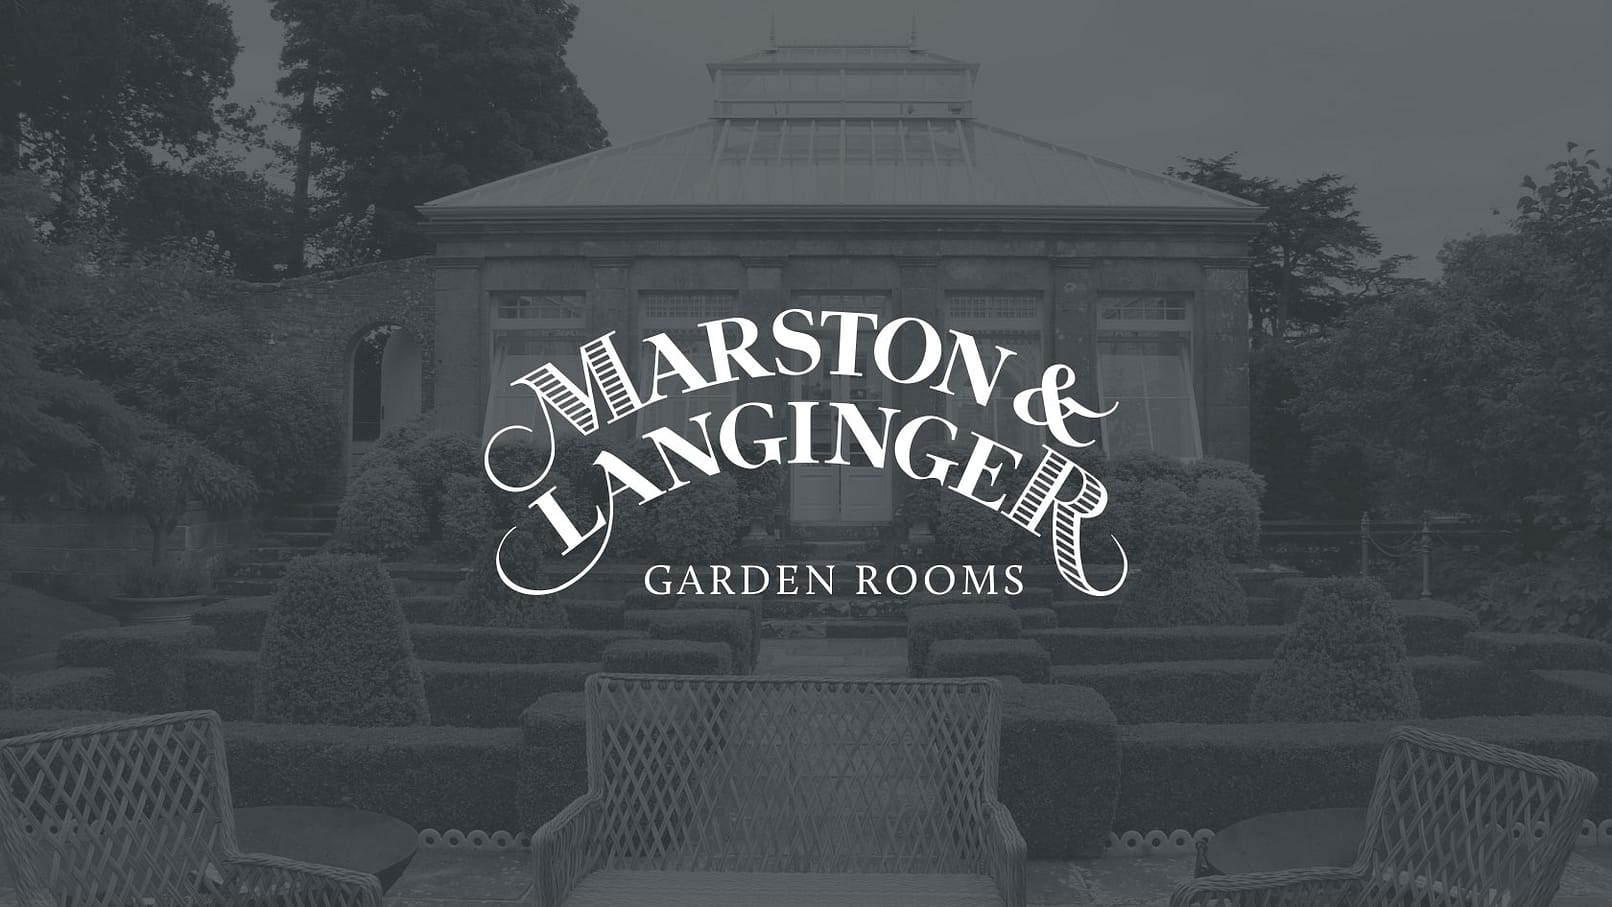 Garden room website design petersfield hampshire